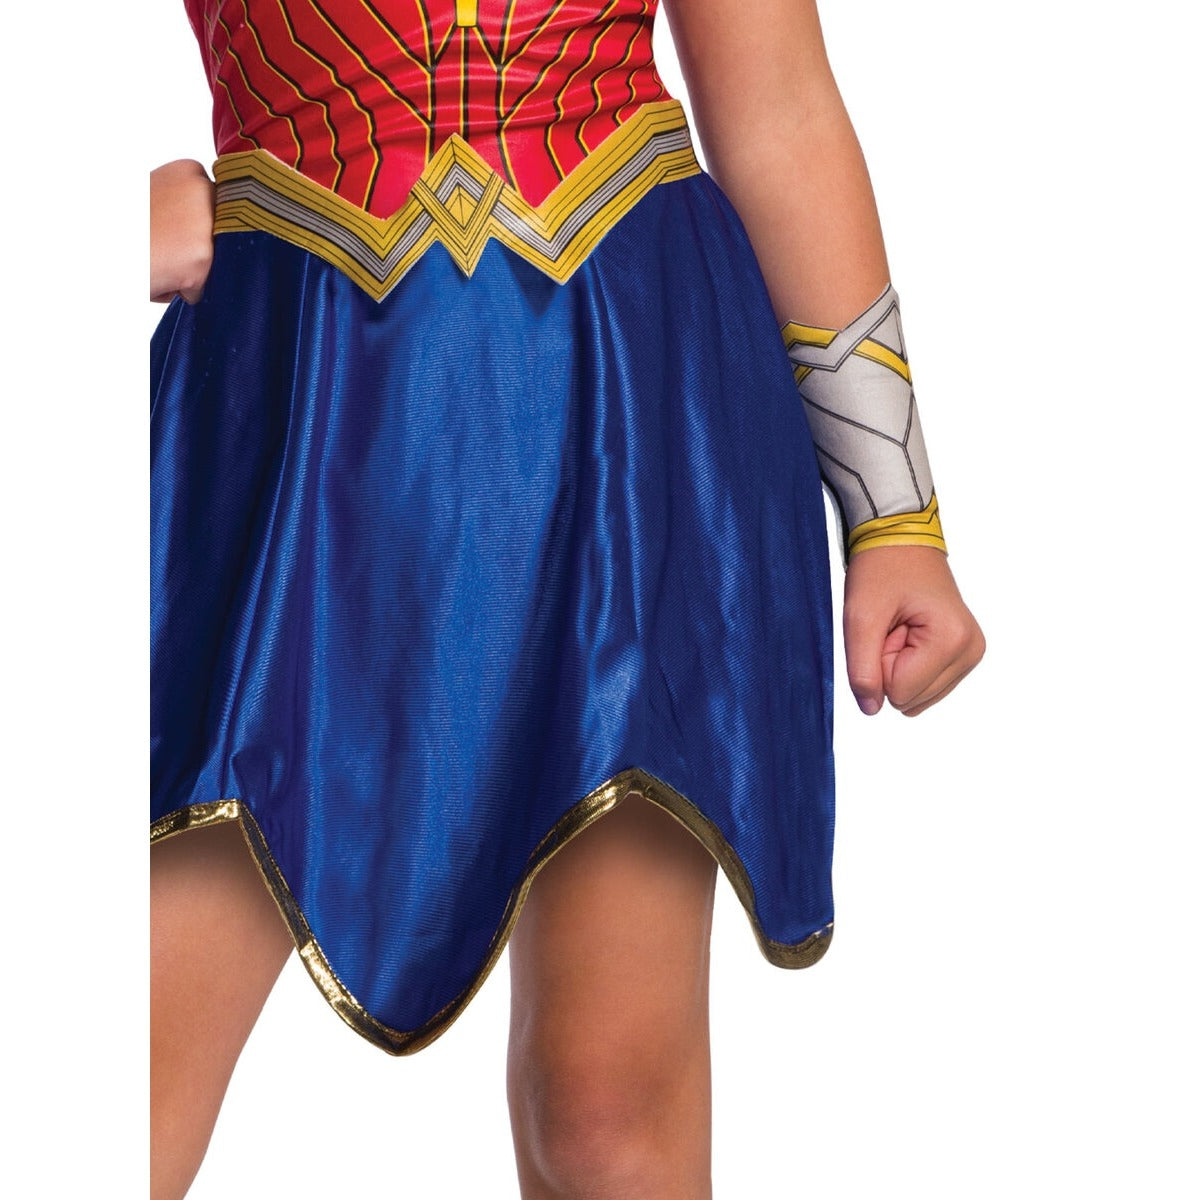 Wonder Woman Fancy Dress Costume - Ages 4-6 – Aussie Haul PH